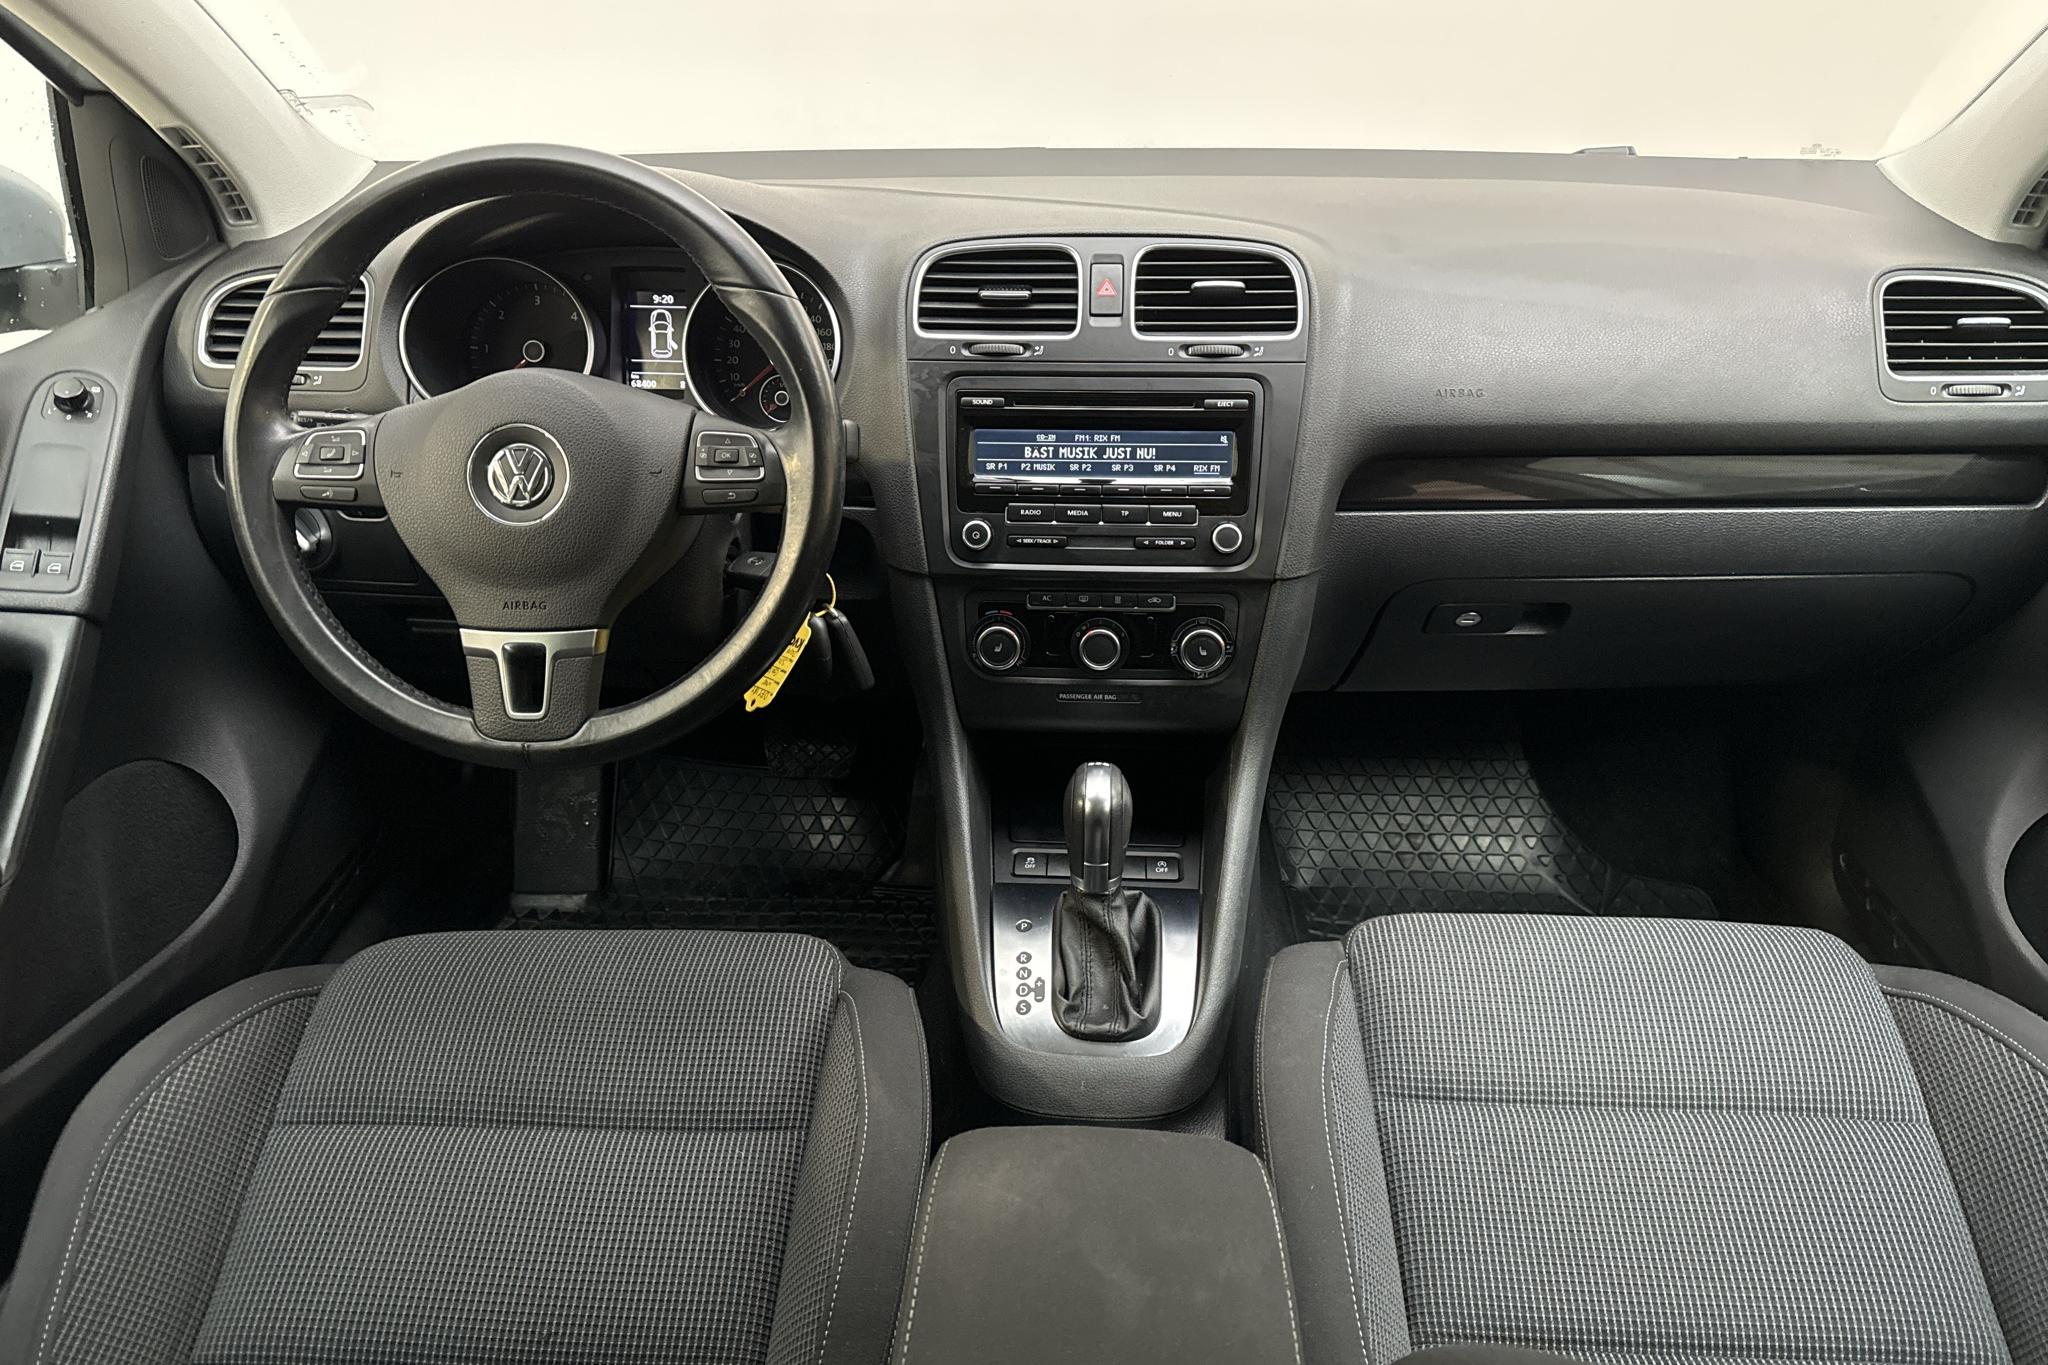 VW Golf VI 1.6 TDI BlueMotion Technology 5dr (105hk) - 68 390 km - Automatyczna - srebro - 2012